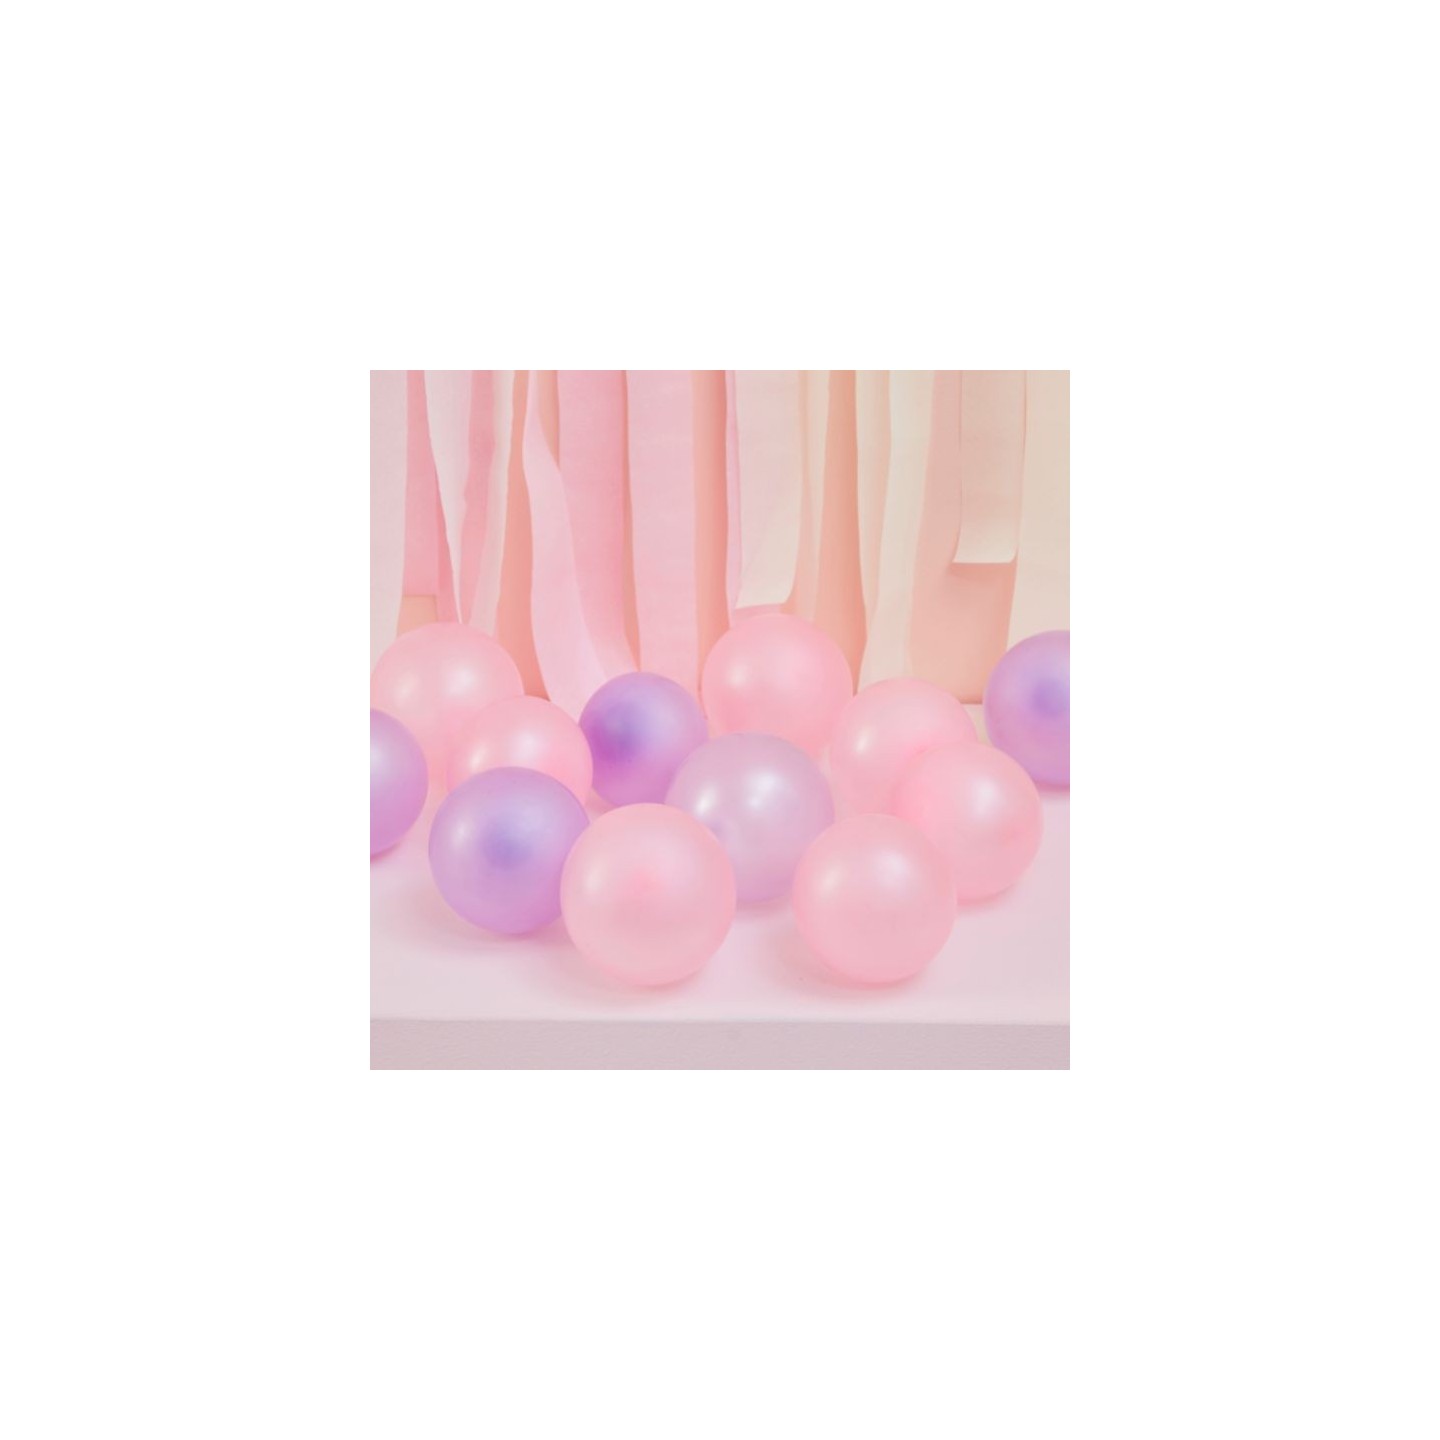 pastel mini ballonnen mix  latex roze lila12cm